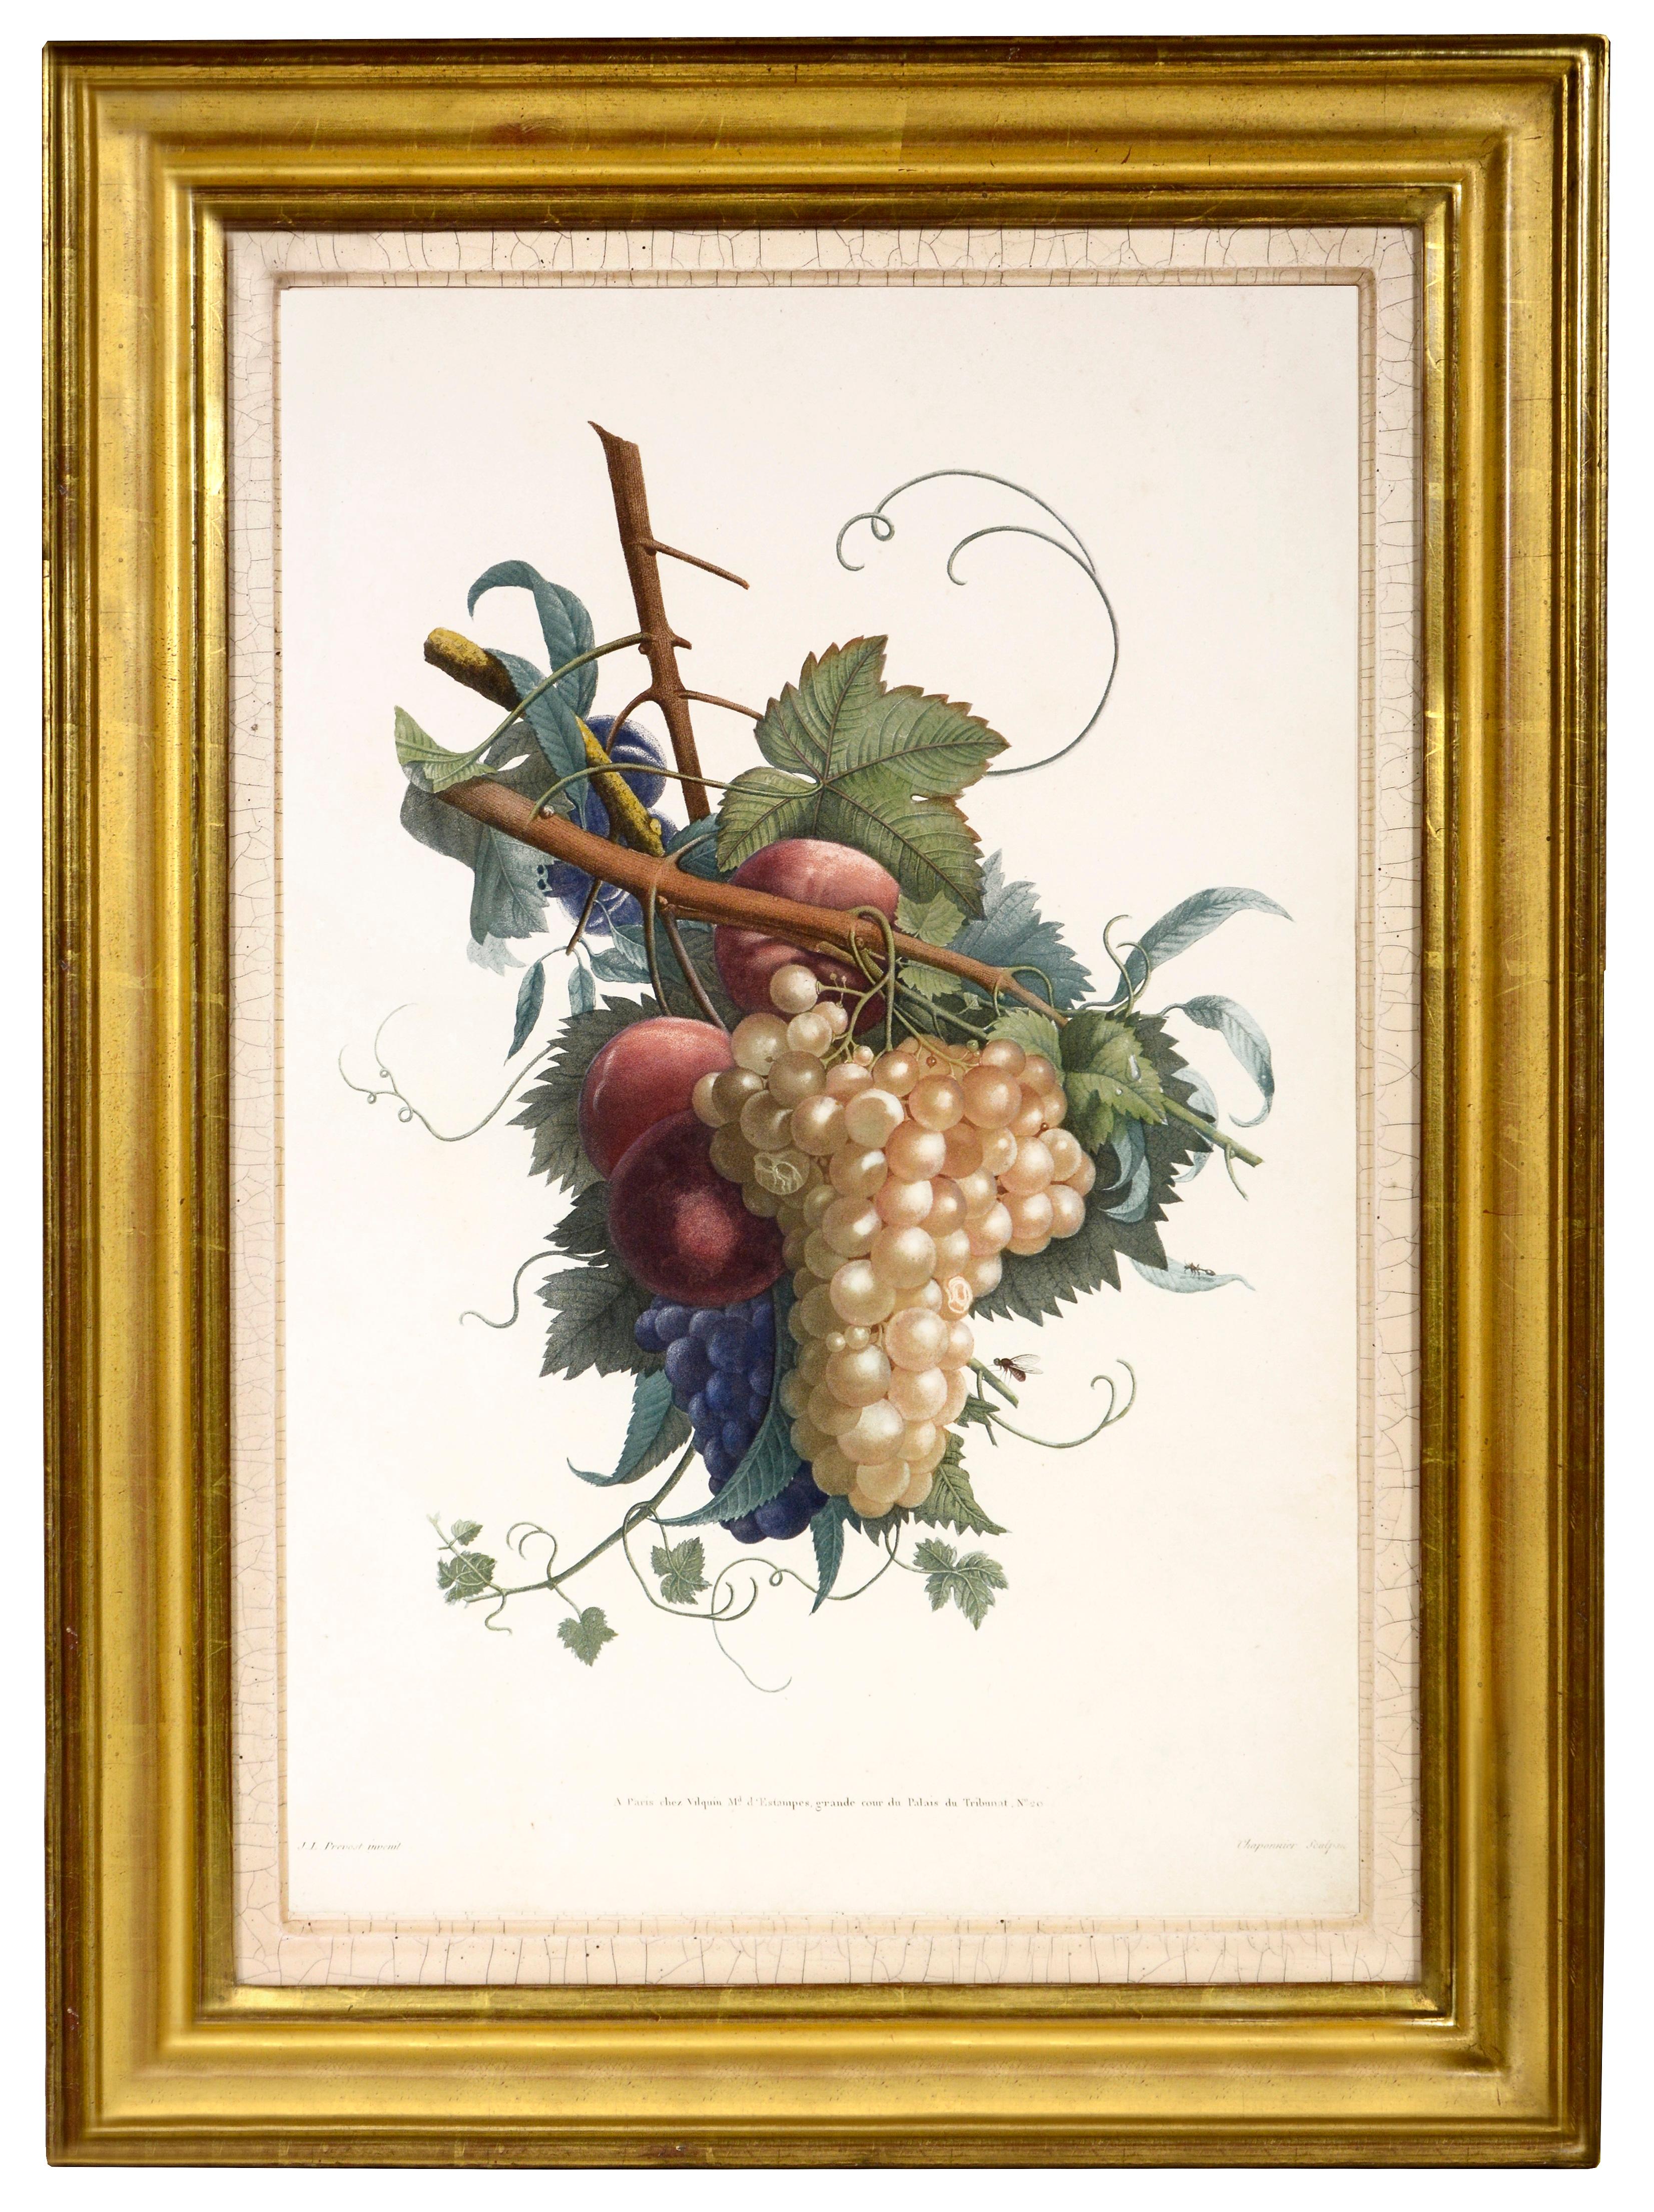 PRÉVOST. Print from Collection des Fleurs et des Fruits